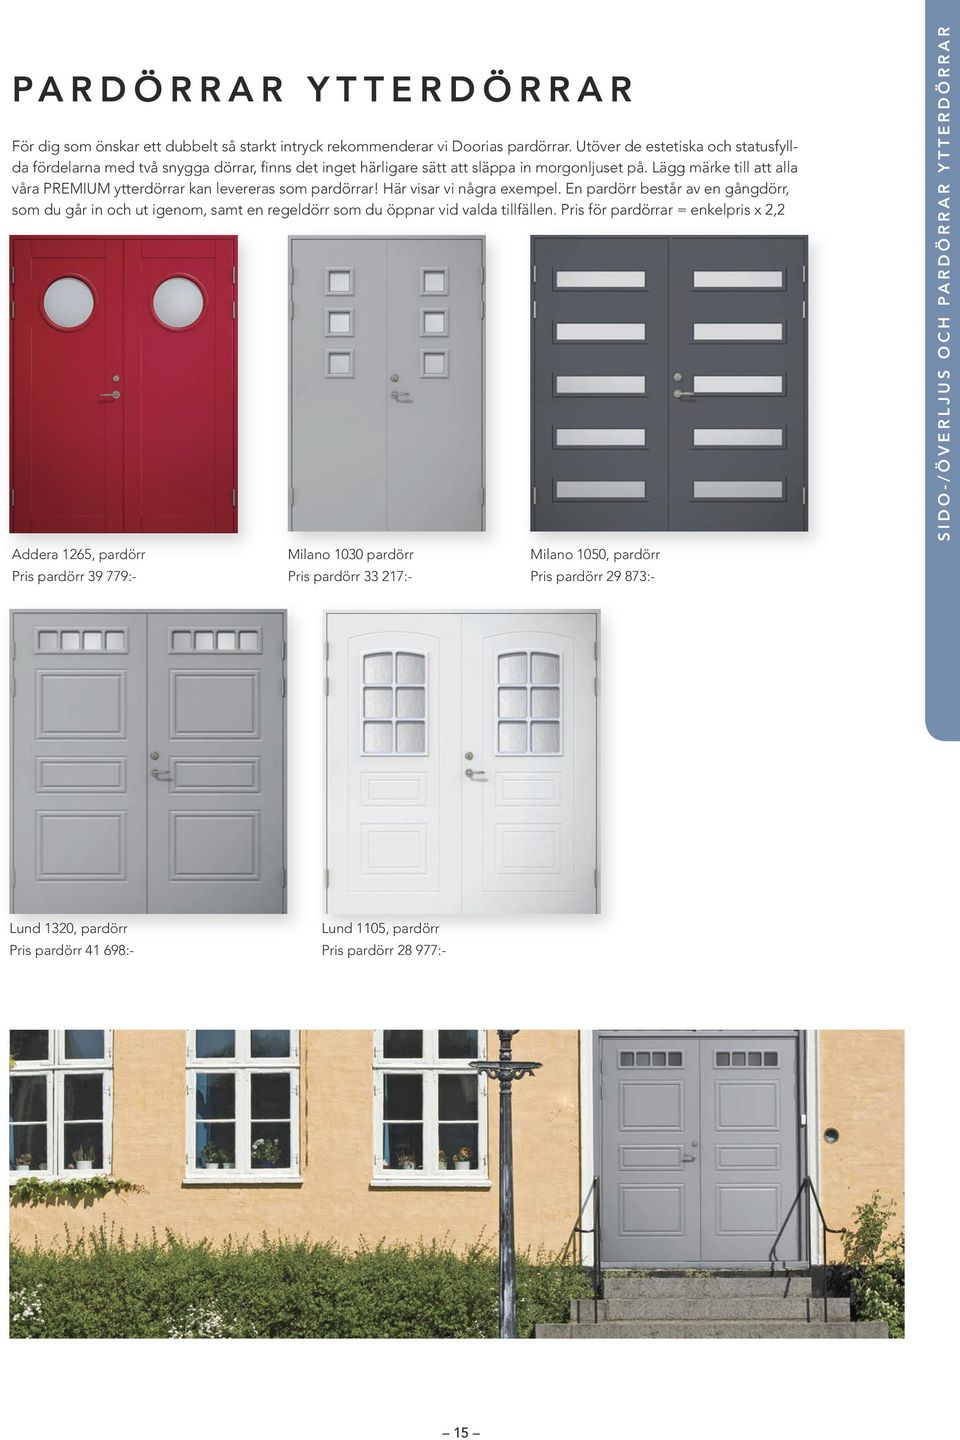 Lägg märke till att alla våra PREMIUM ytterdörrar kan levereras som pardörrar! Här visar vi några exempel.